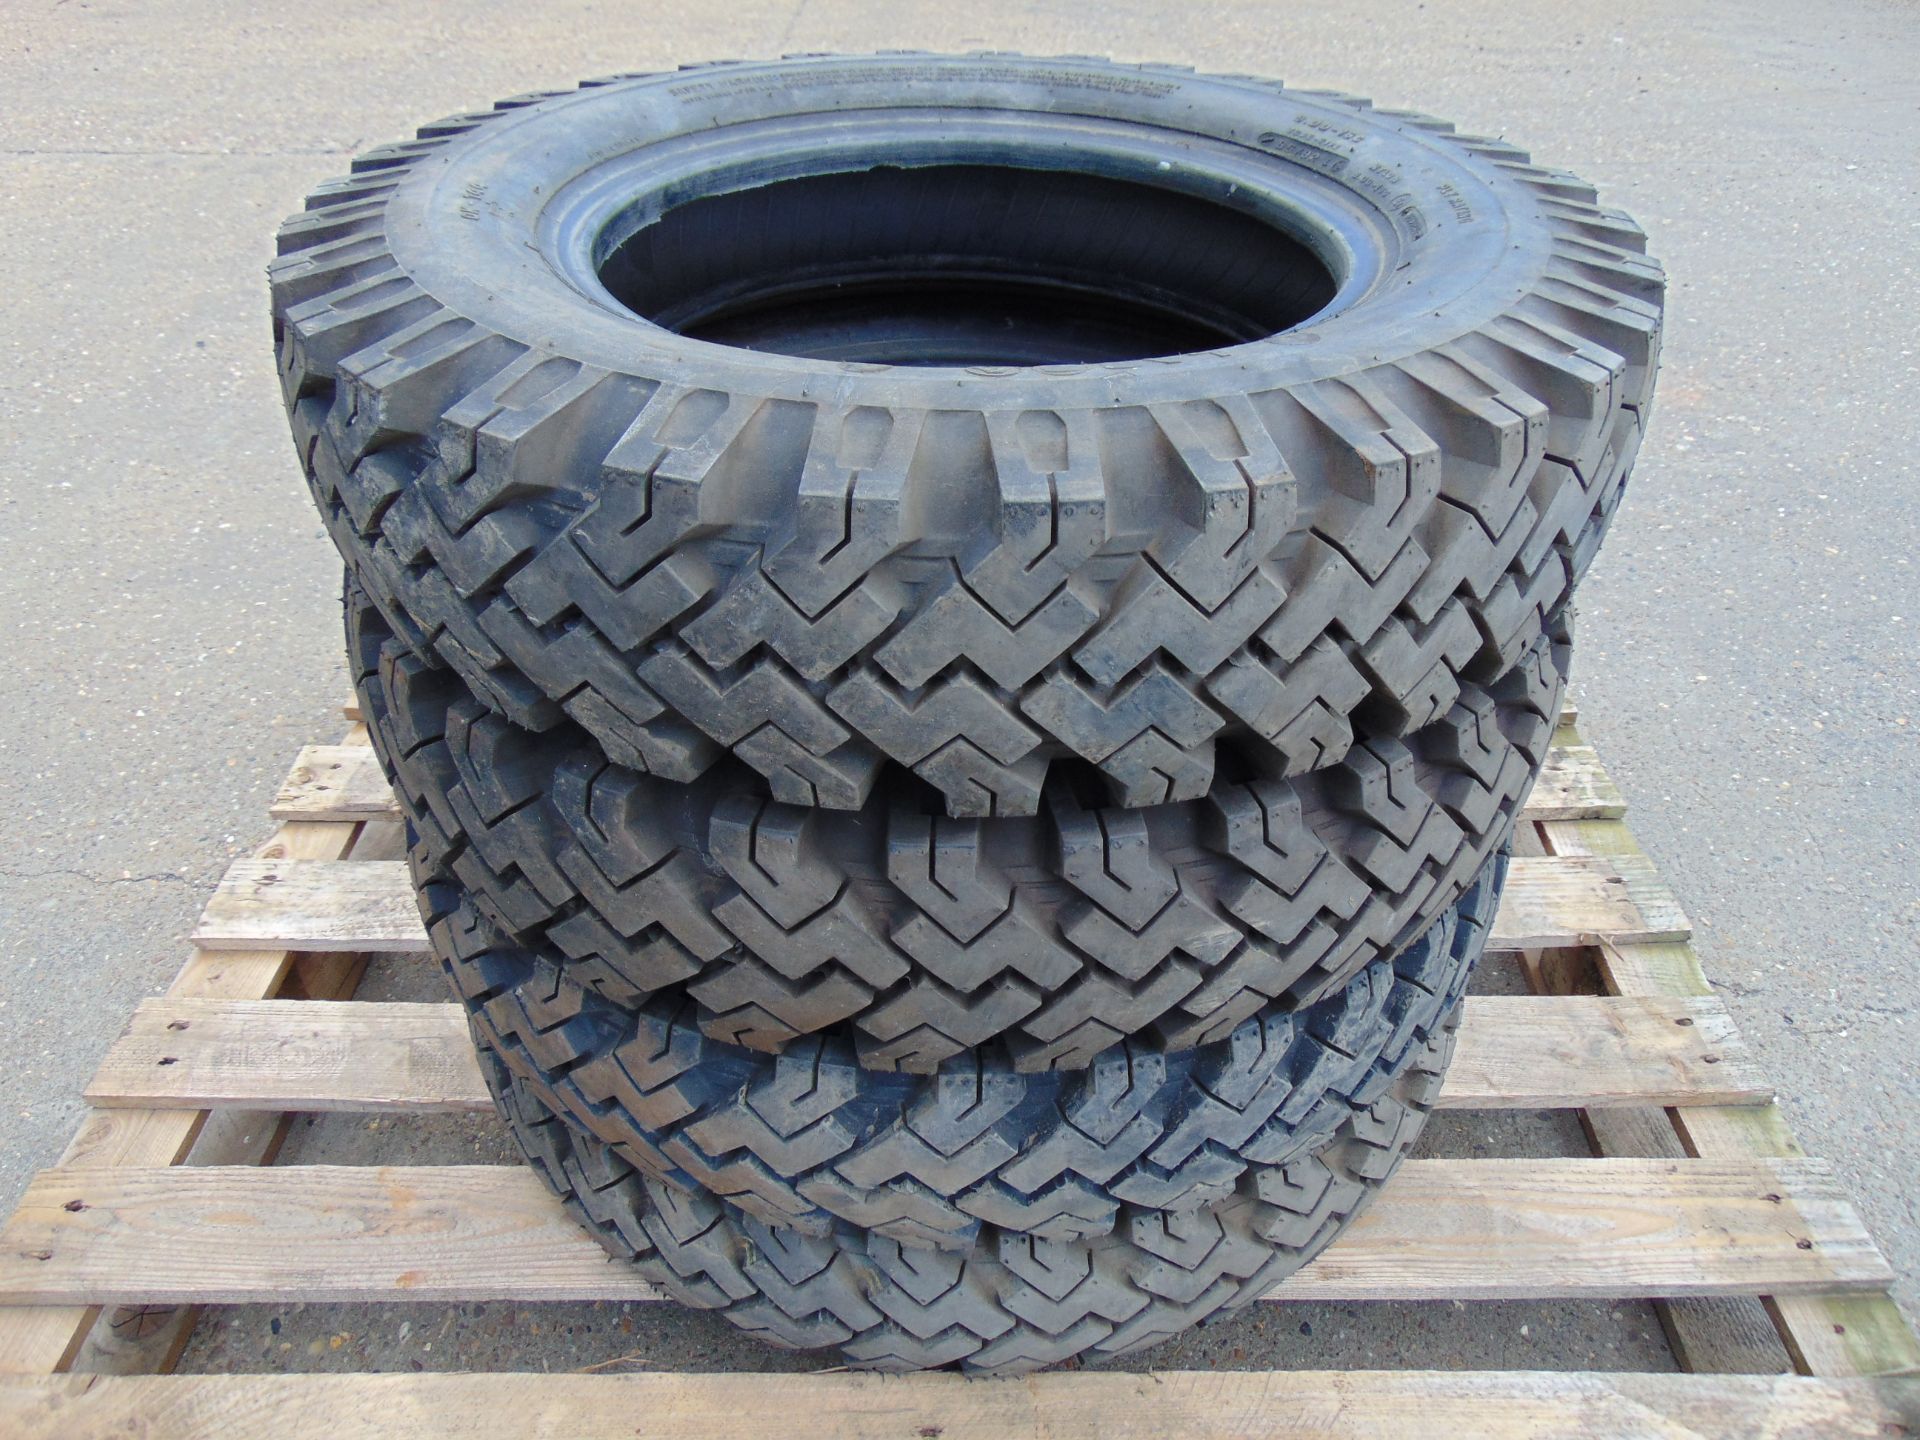 4 x Lassa 6.00-16 C Tyres